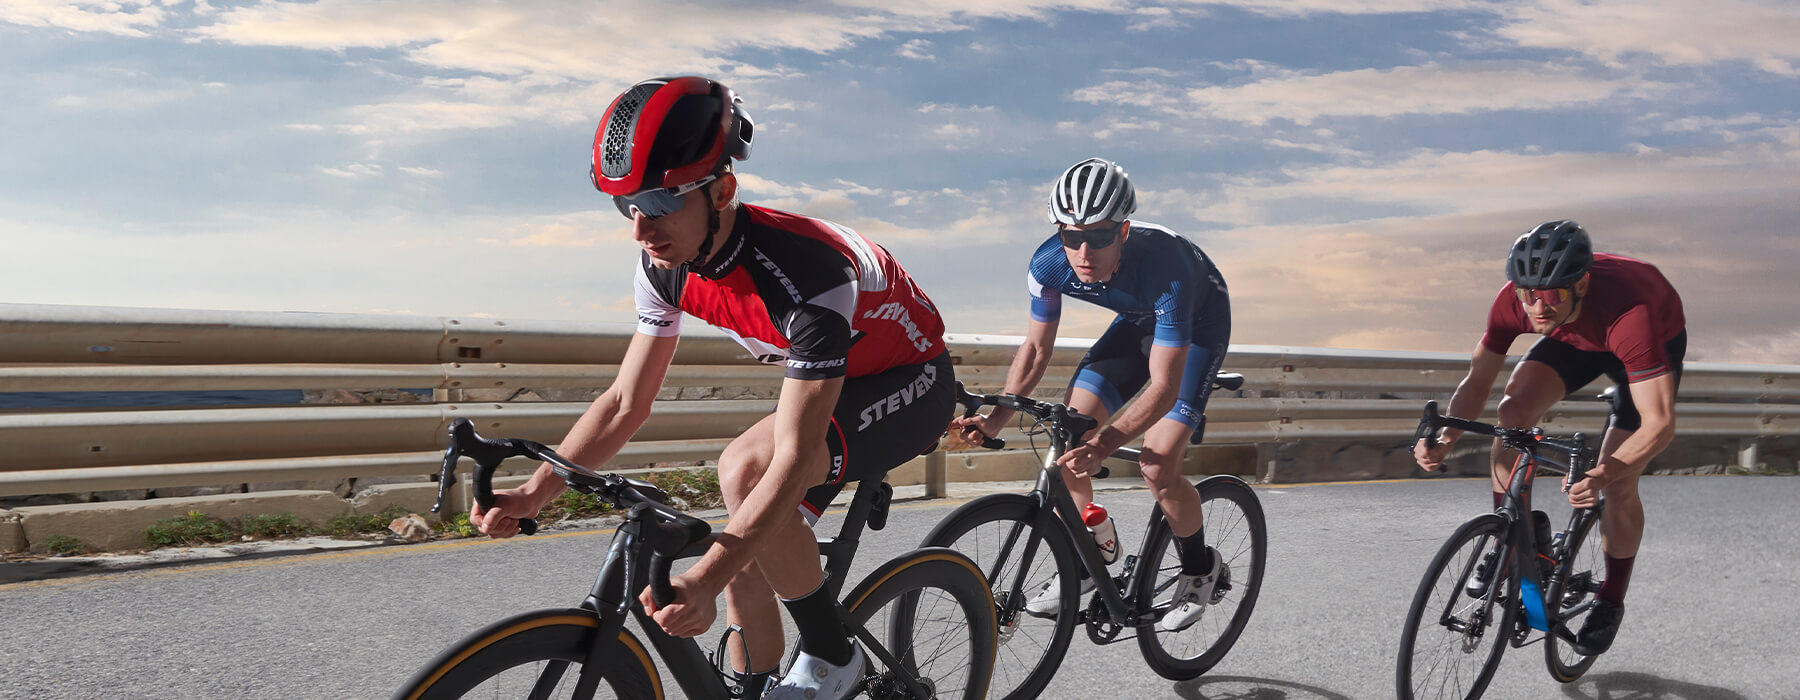 Las novedades más interesantes de Garmin esta temporada para el ciclismo y  el fitness al aire libre – FITENIUM